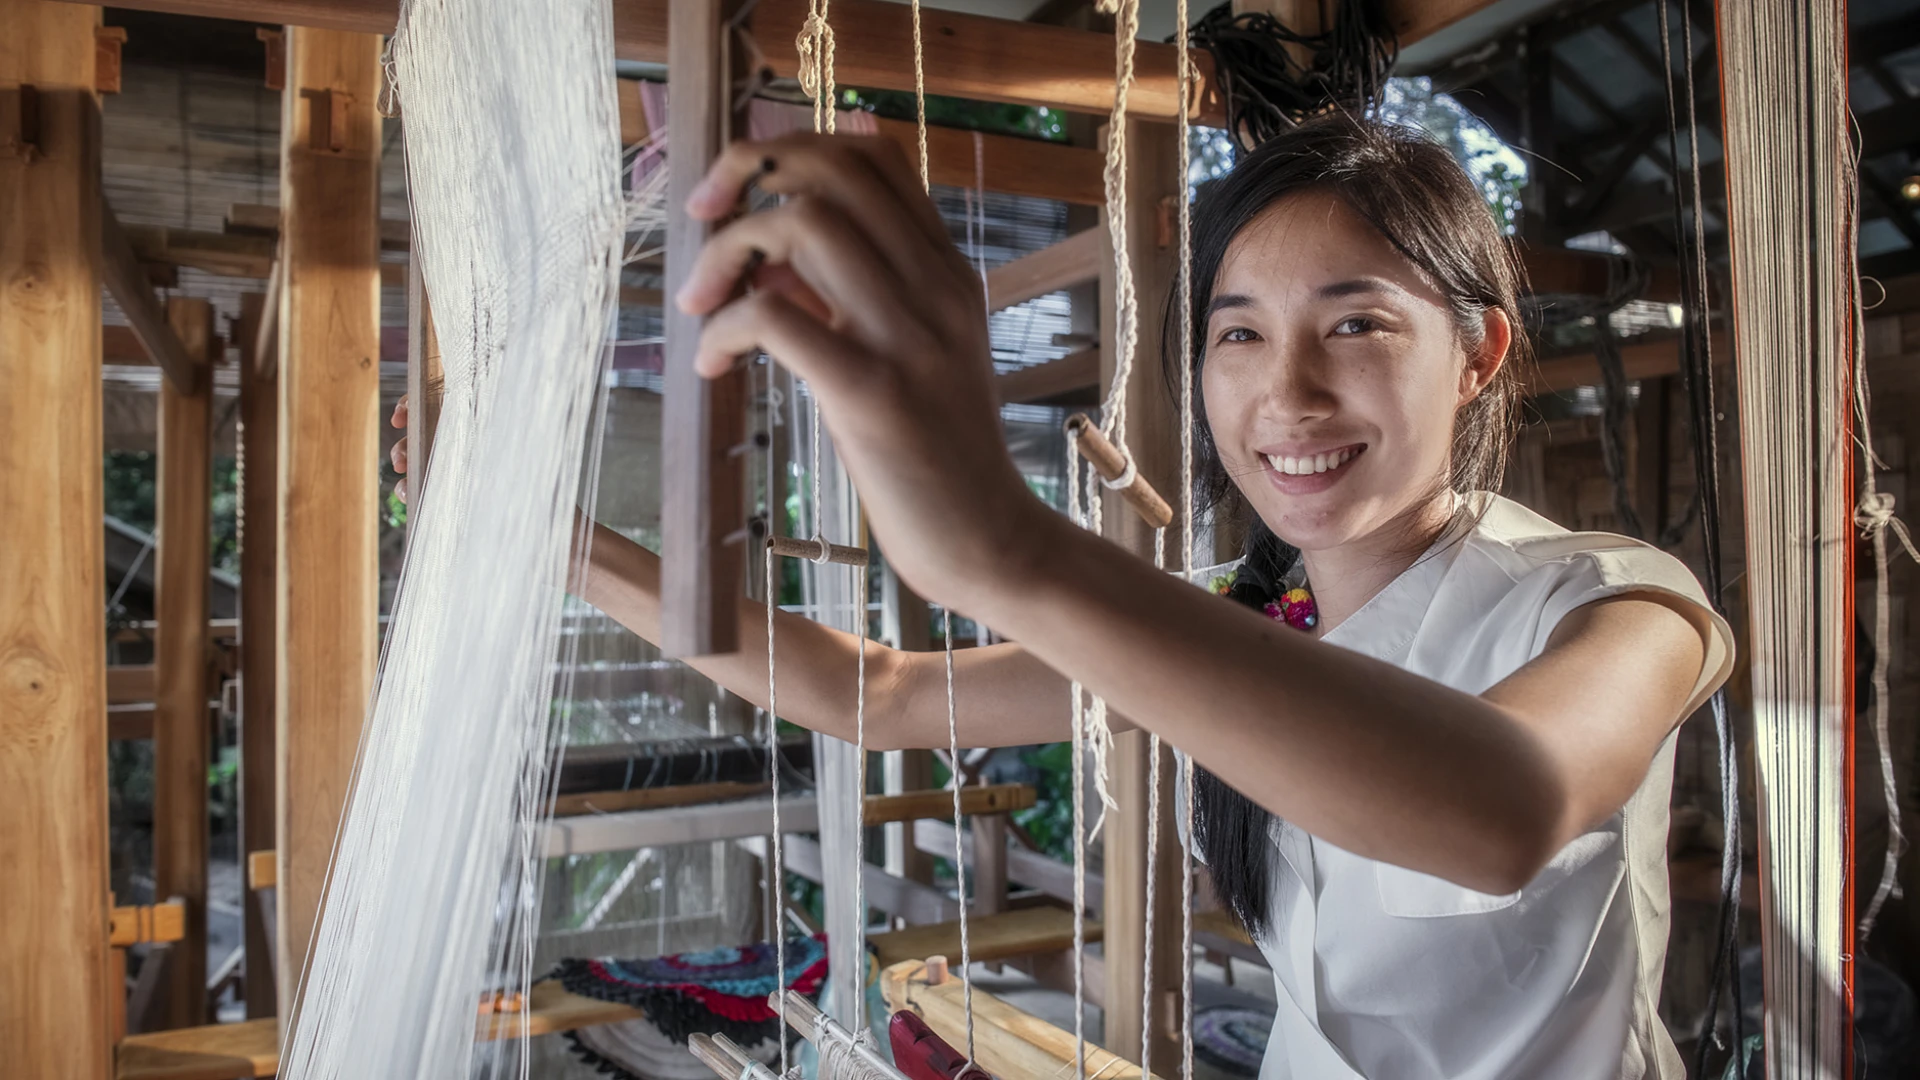 Discover Laos Through Textiles